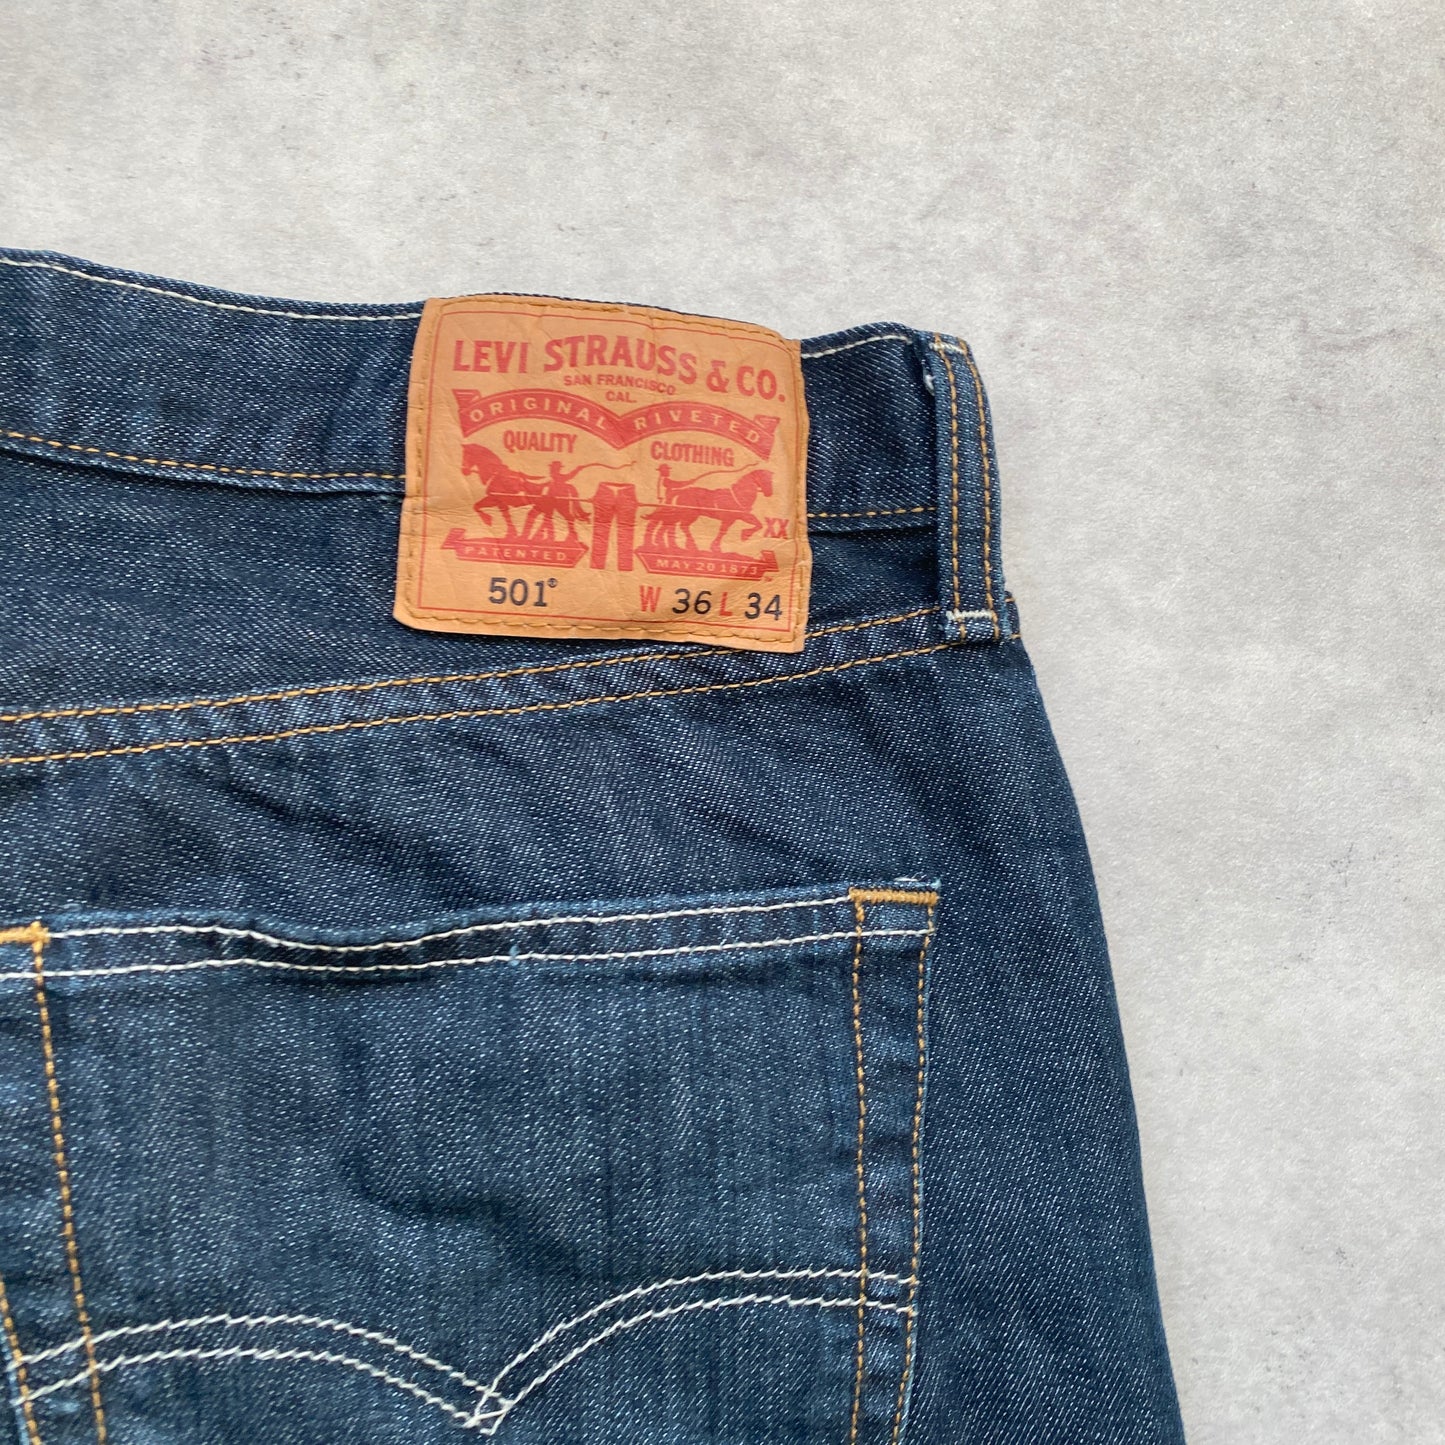 Levi‘s 501 vintage denim pants (36/34)